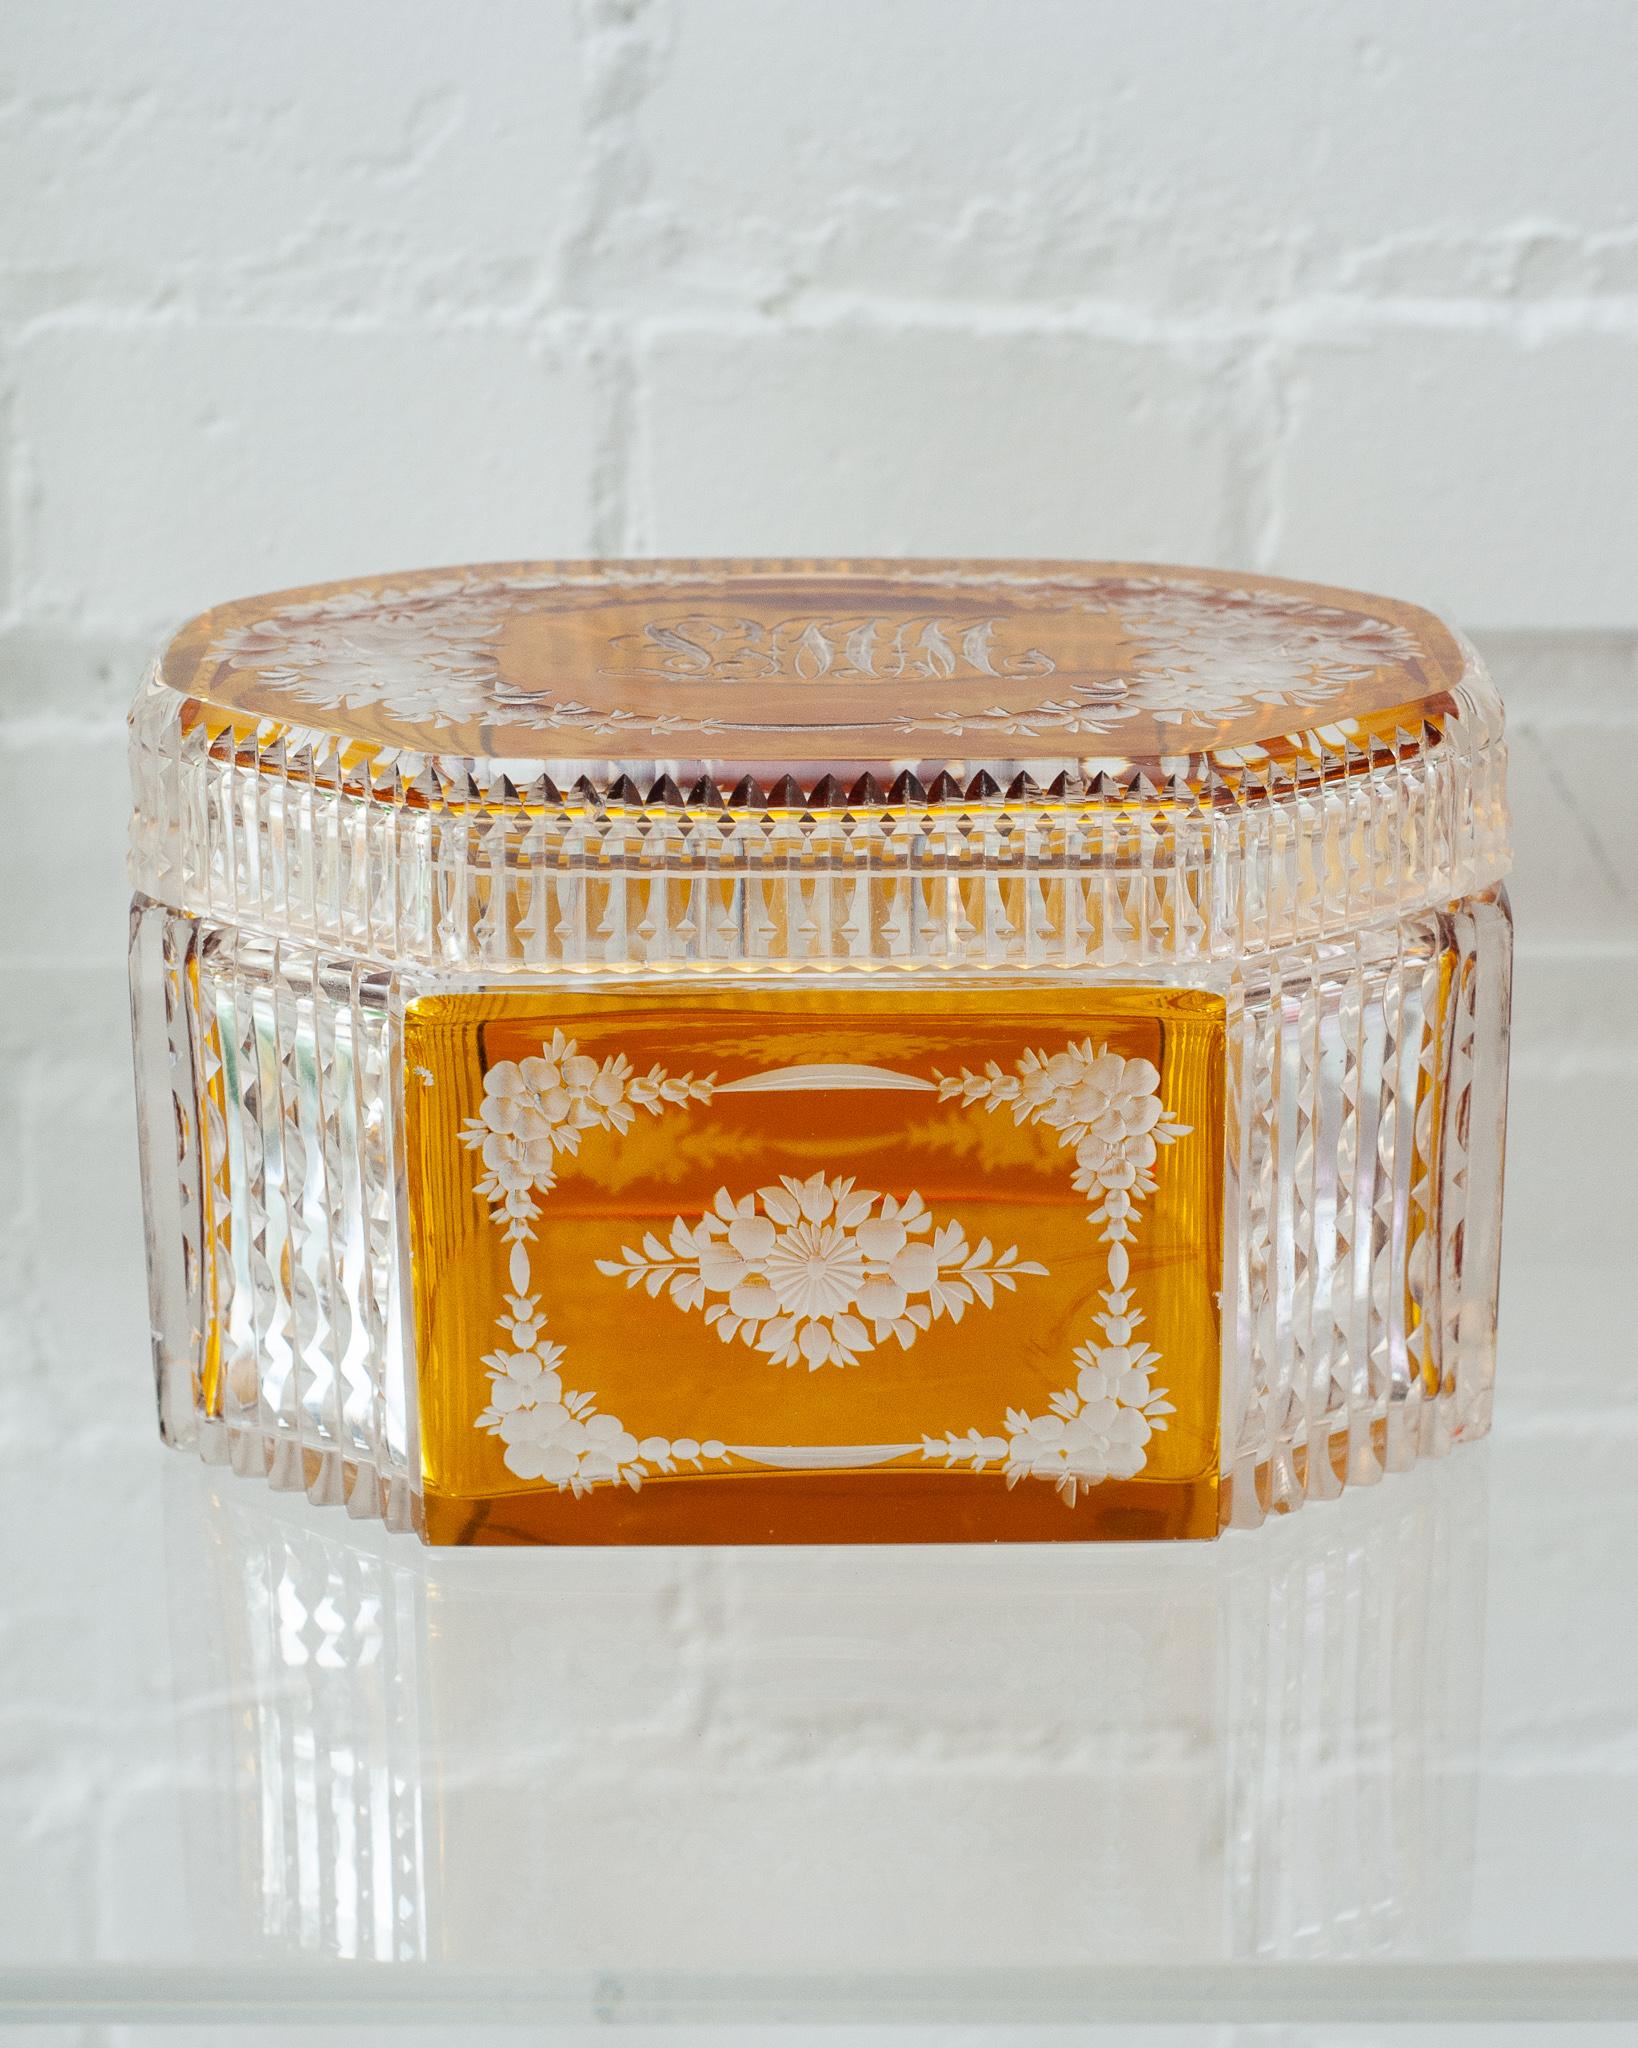 Une grande boîte ancienne en verre ambré de Bohème avec des motifs floraux ornés en cristal taillé. L'art du cristal taillé rend ce récipient aussi beau que le contenu que vous pouvez y mettre.